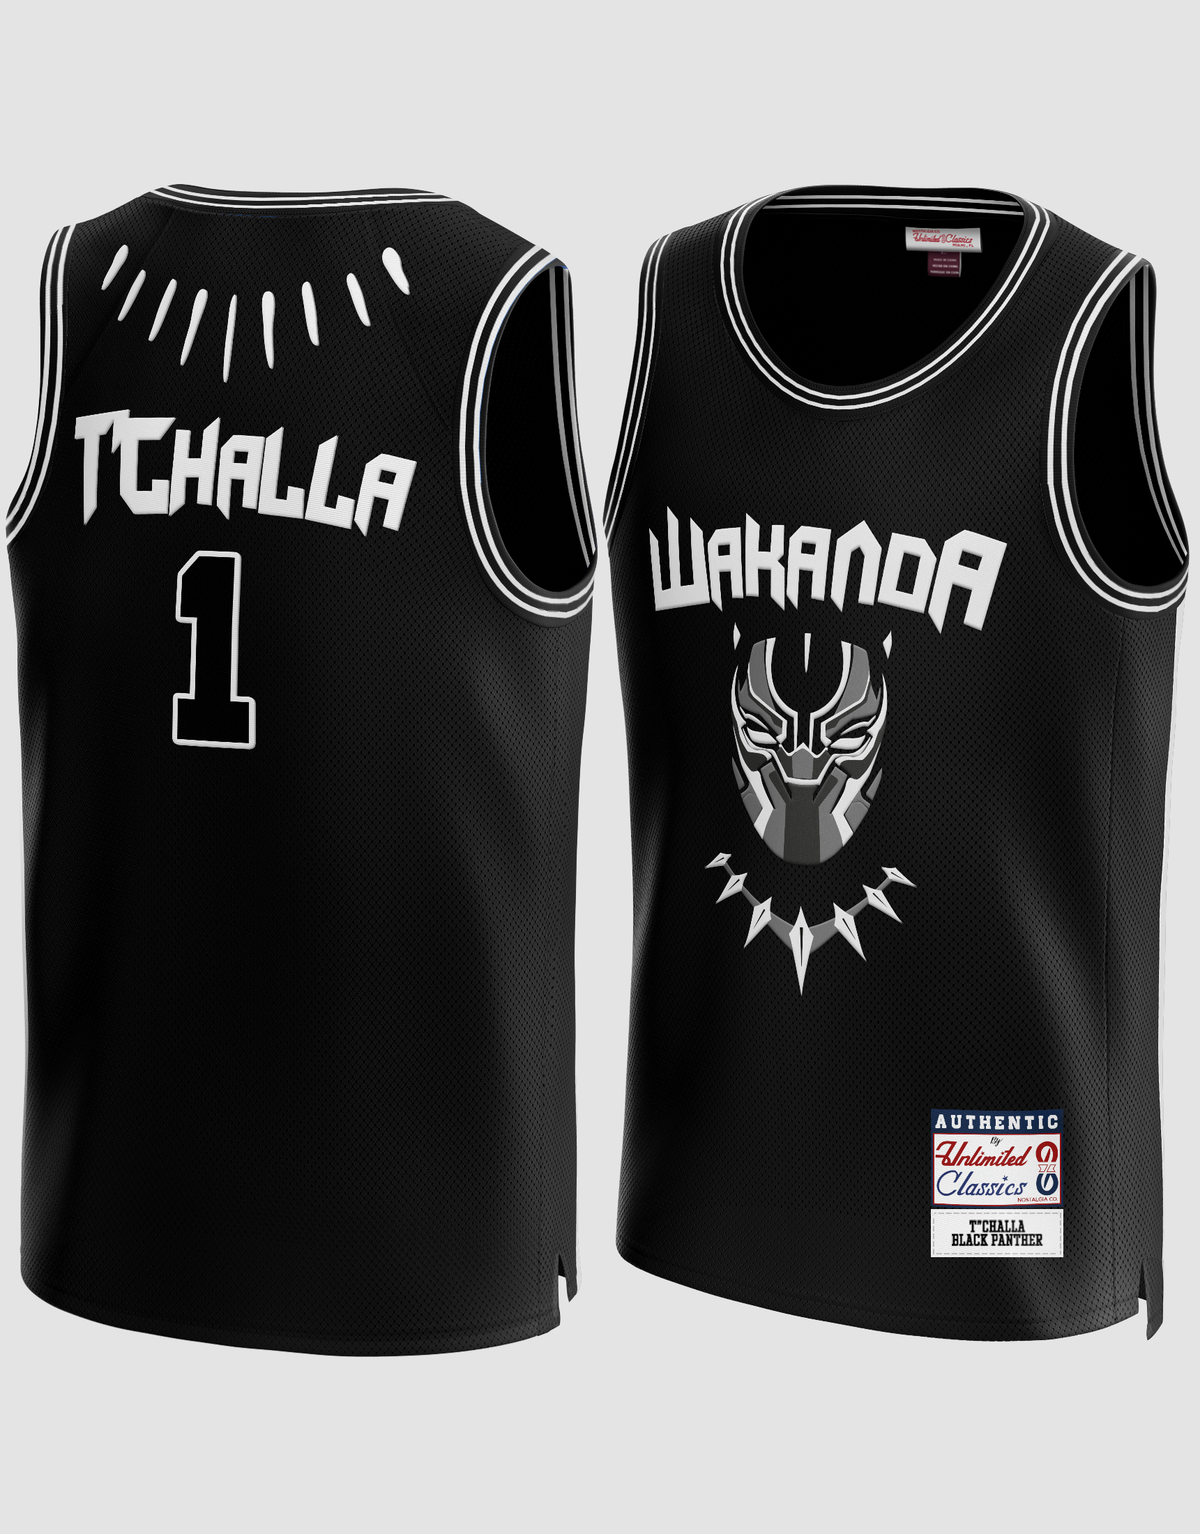 T’challa #1 Wakanda Black Panther Basketball Jersey M